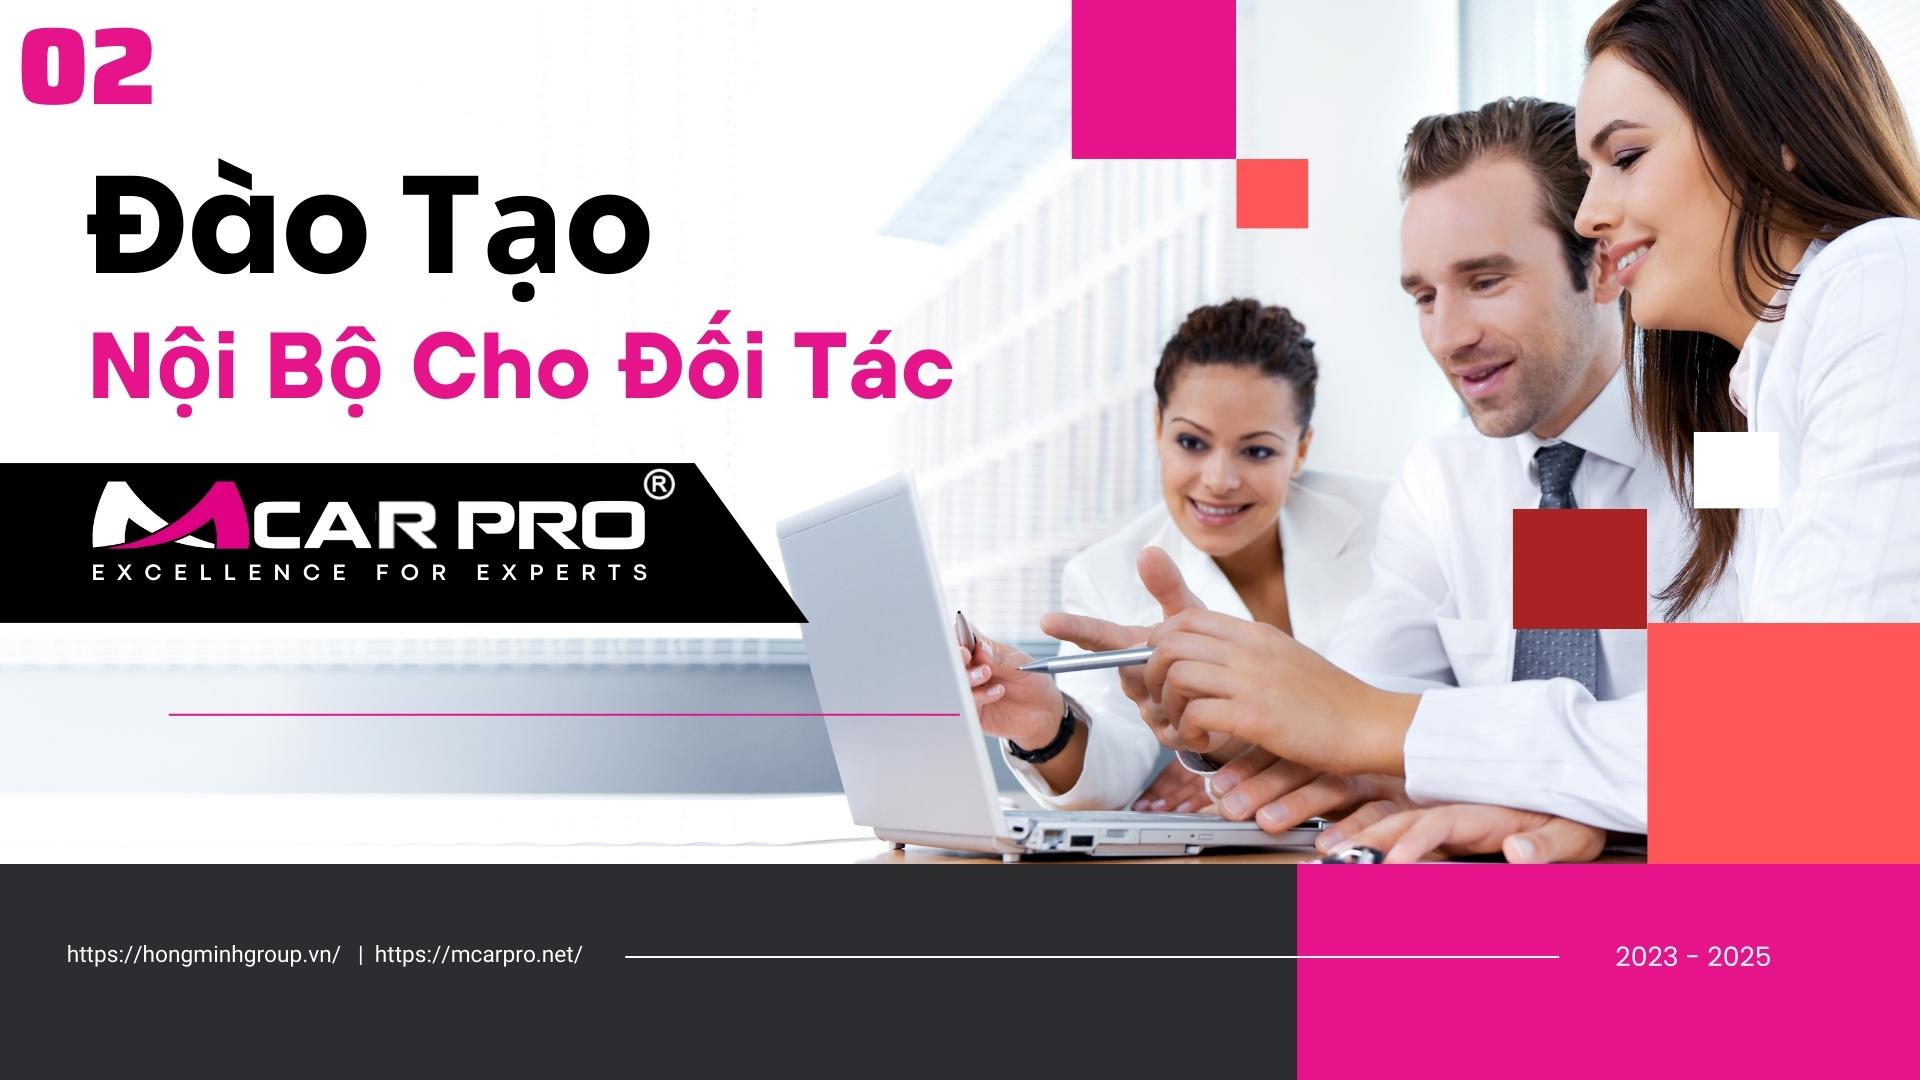 5 Lý do bạn nên hợp tác với Mcar Pro Việt Nam